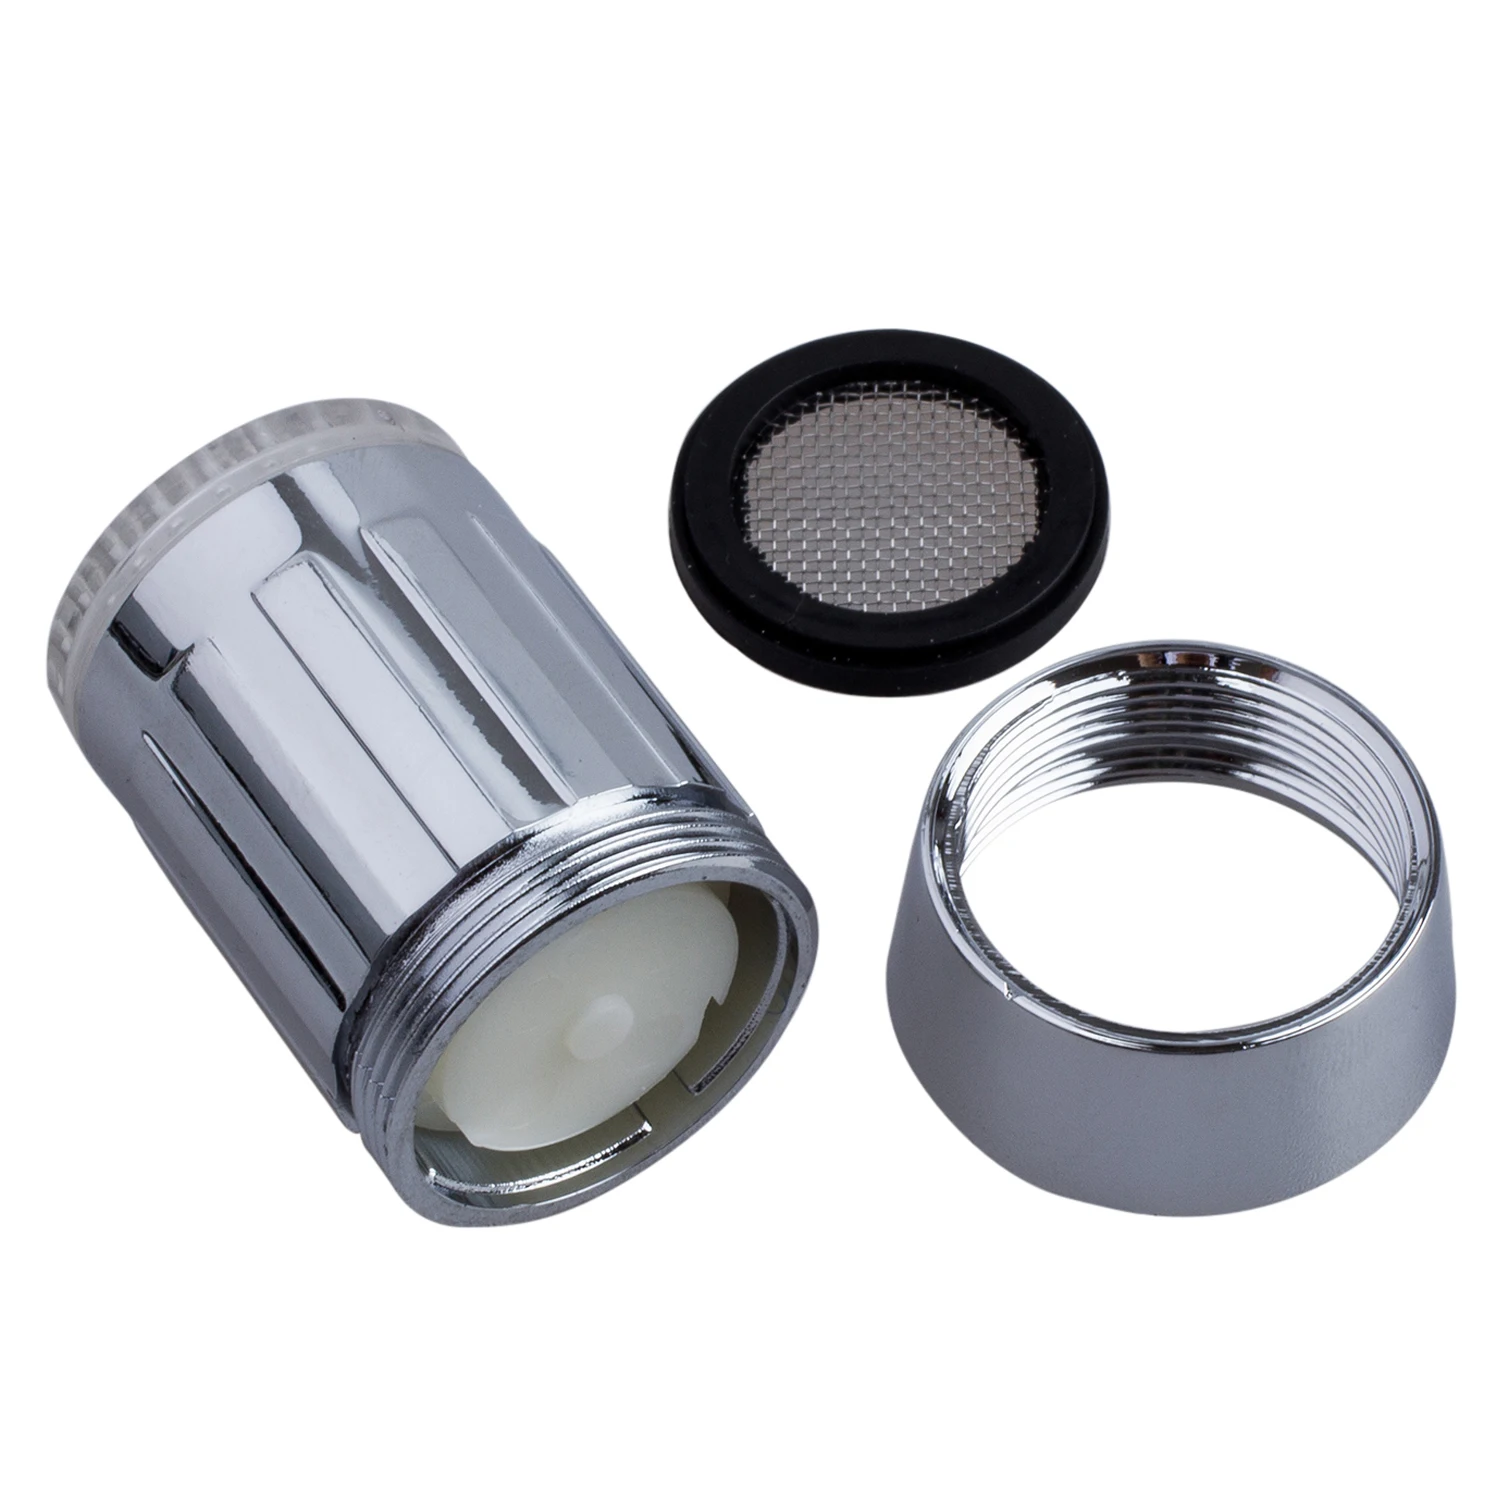 Durable 3-Color Water Glow LED Faucet Light Temperature Sensor 1Pc 